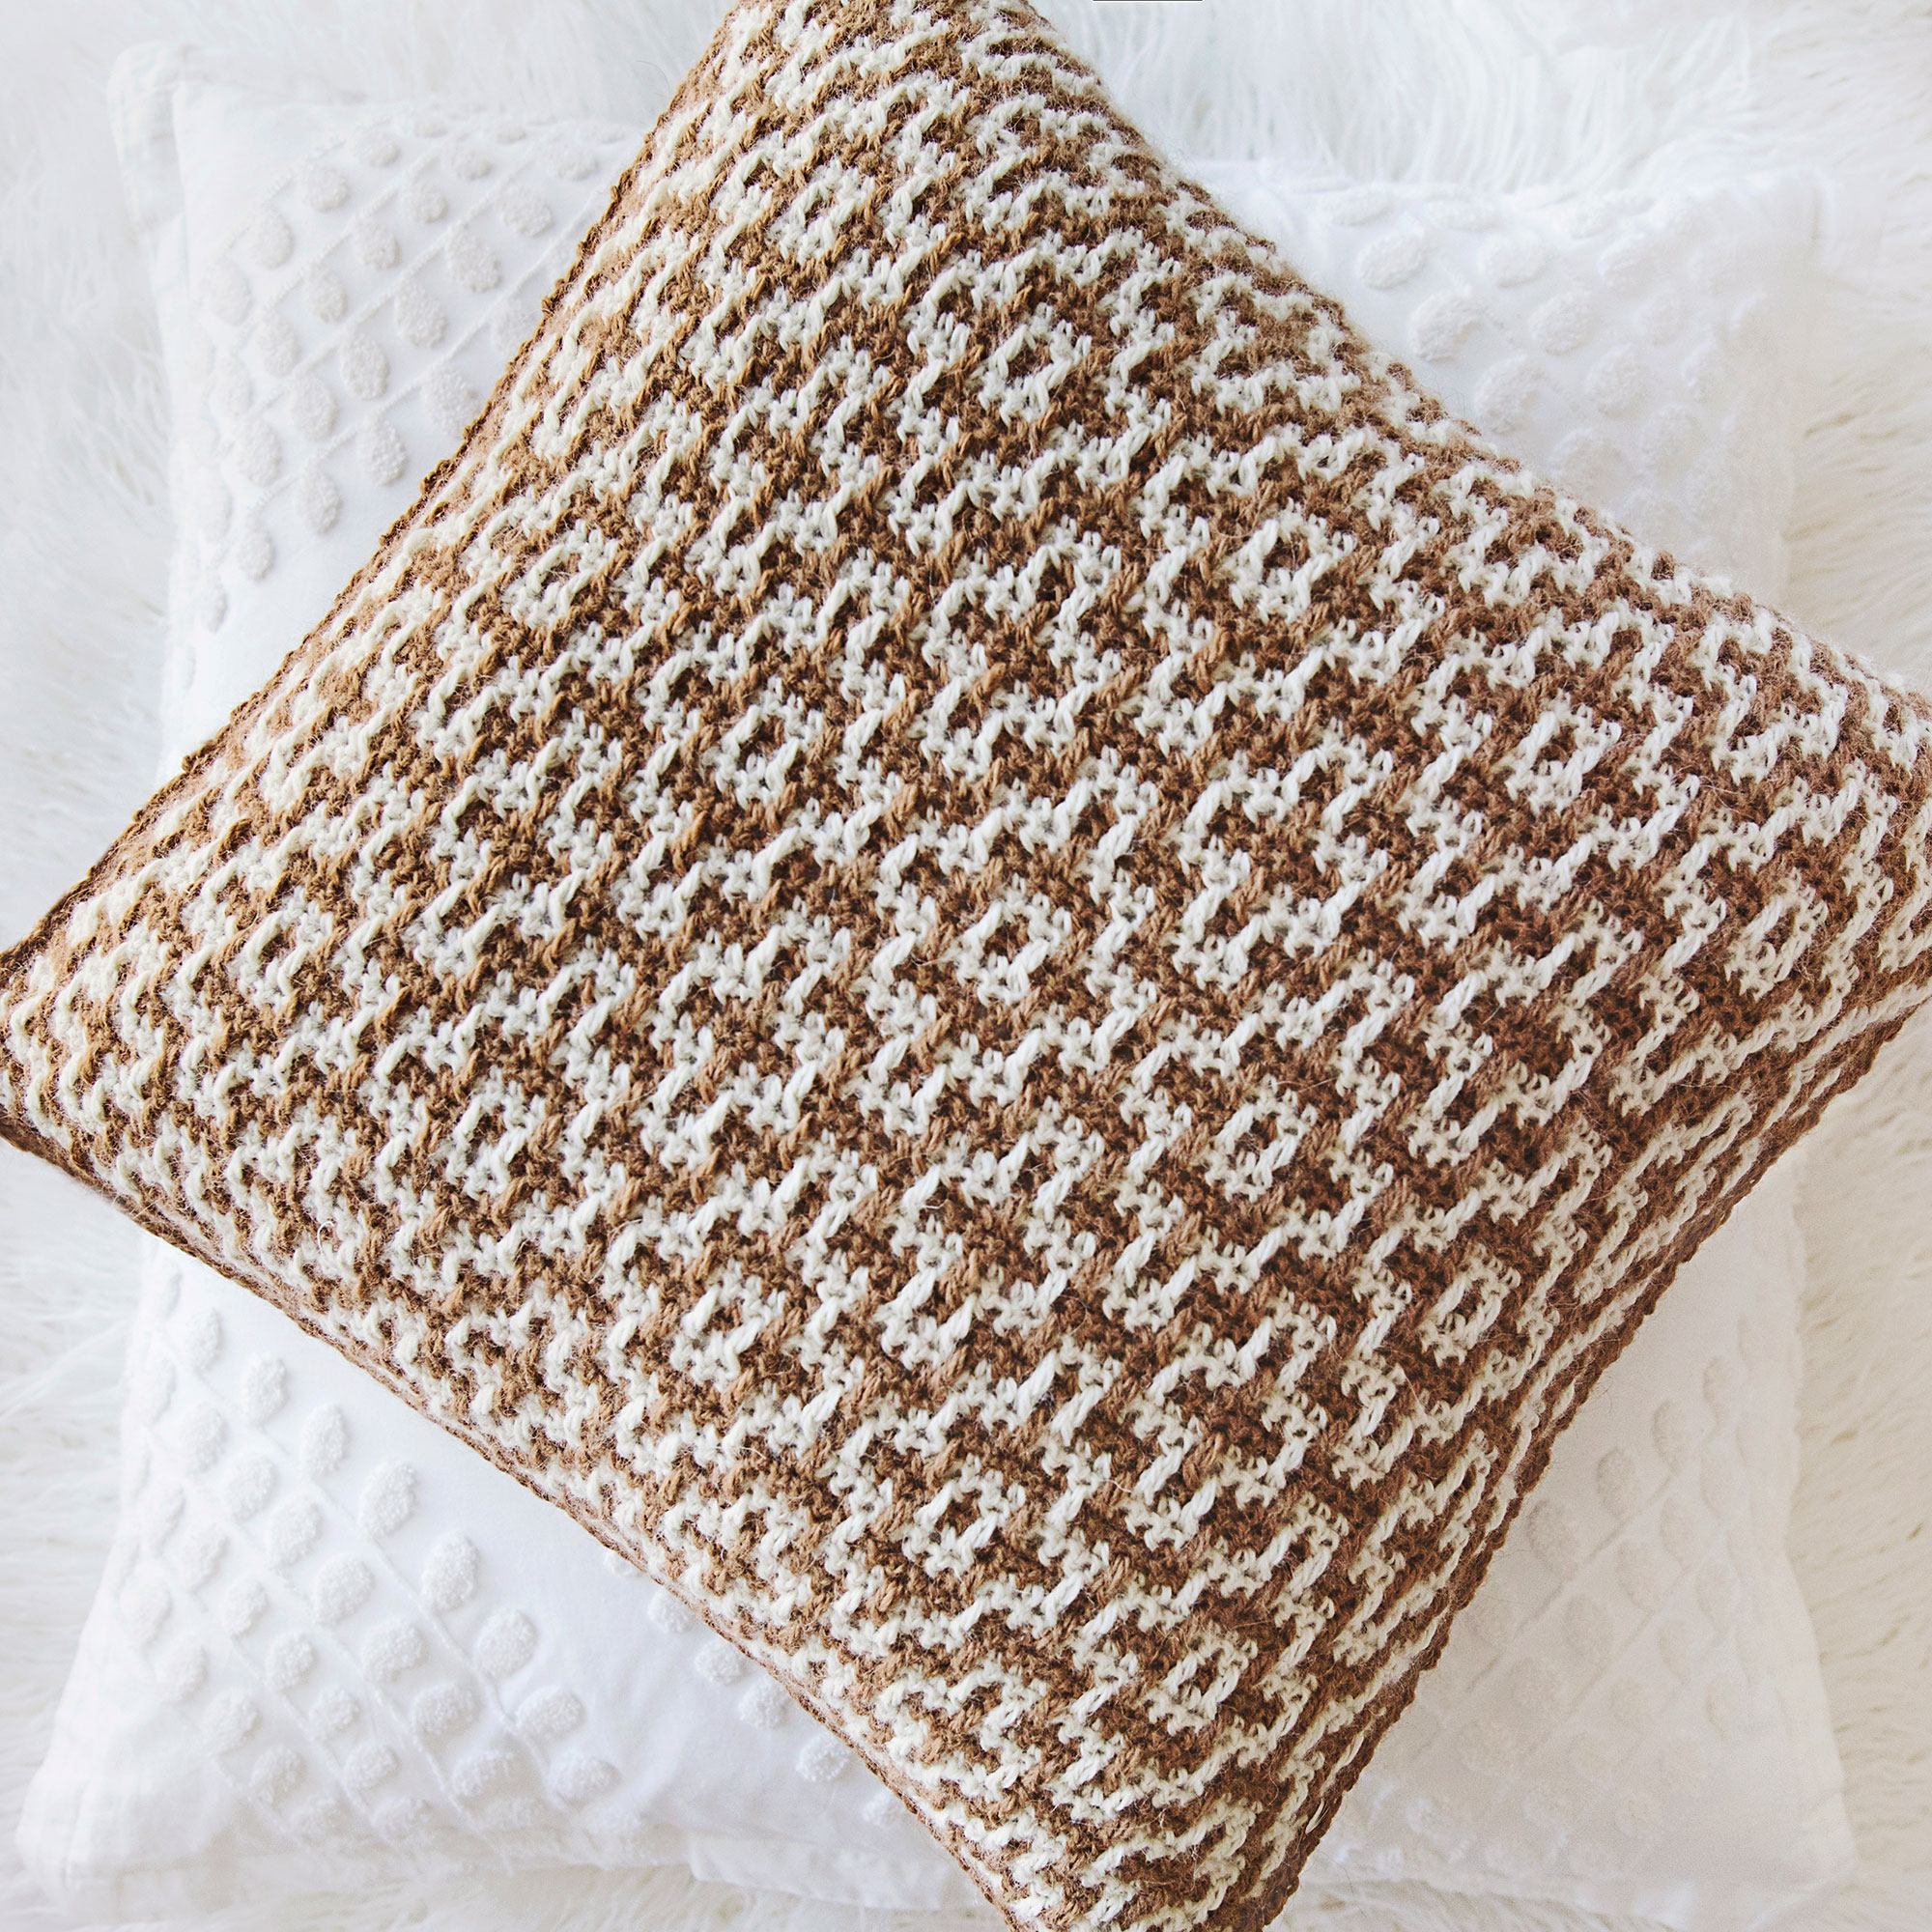 39 - Spike DC Mosaic Crochet  Crochet pillow patterns free